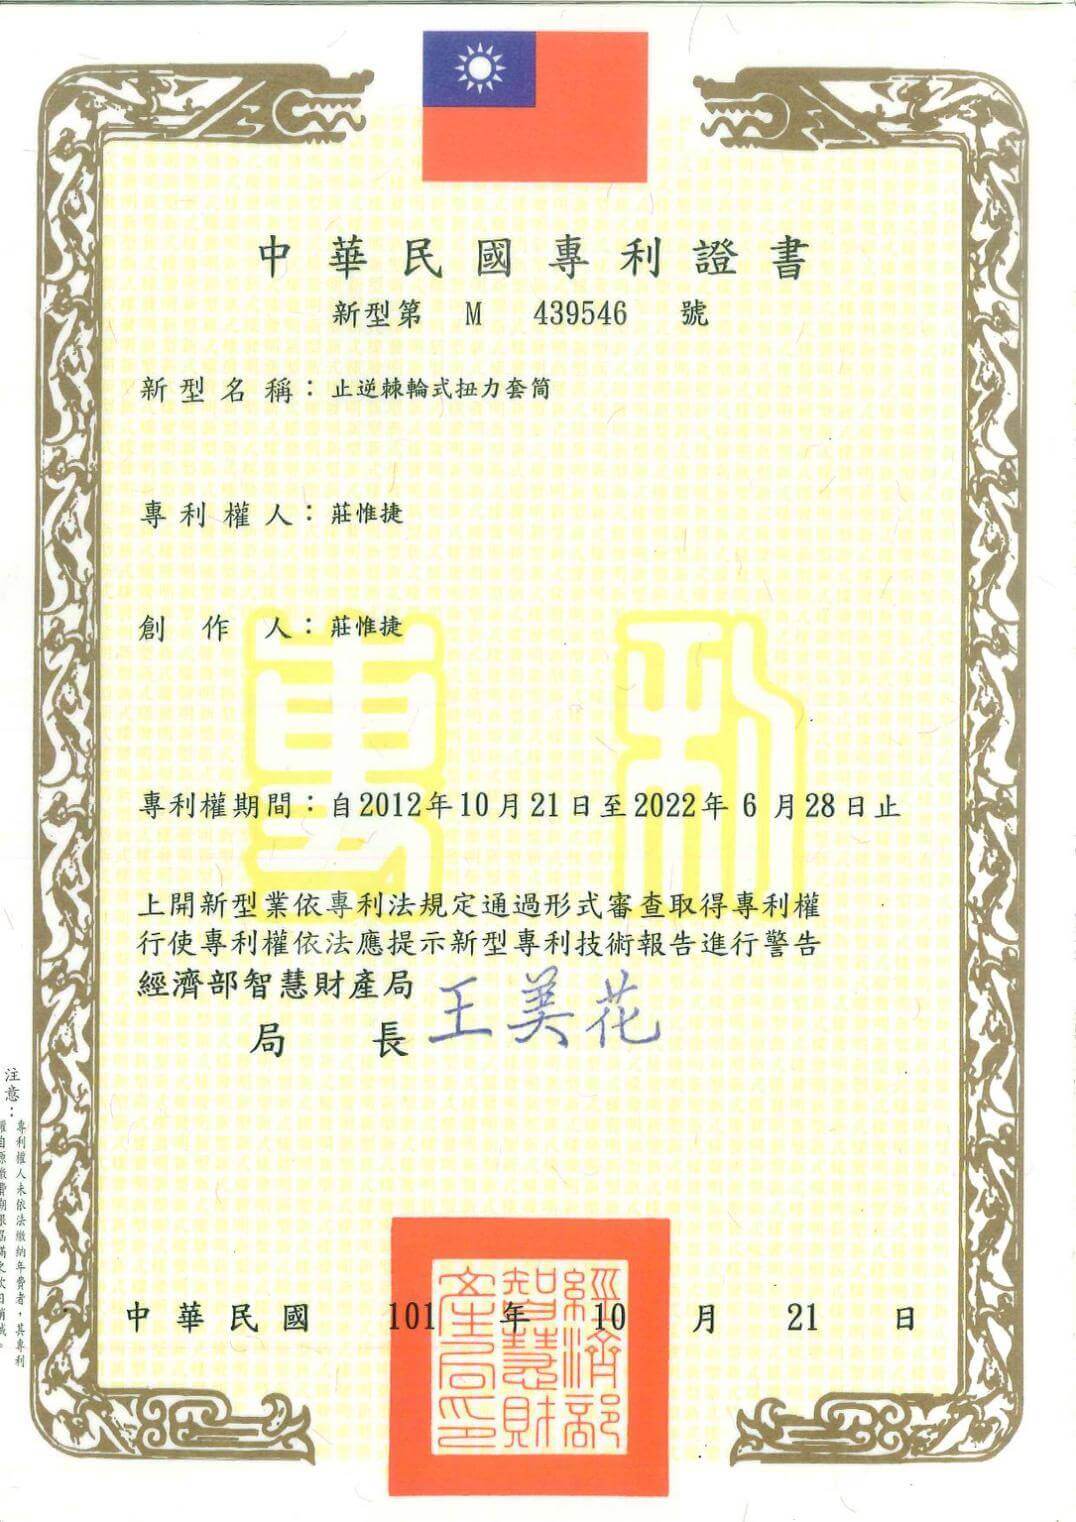 Chienfu-Tec CNC patents in Taiwan-13